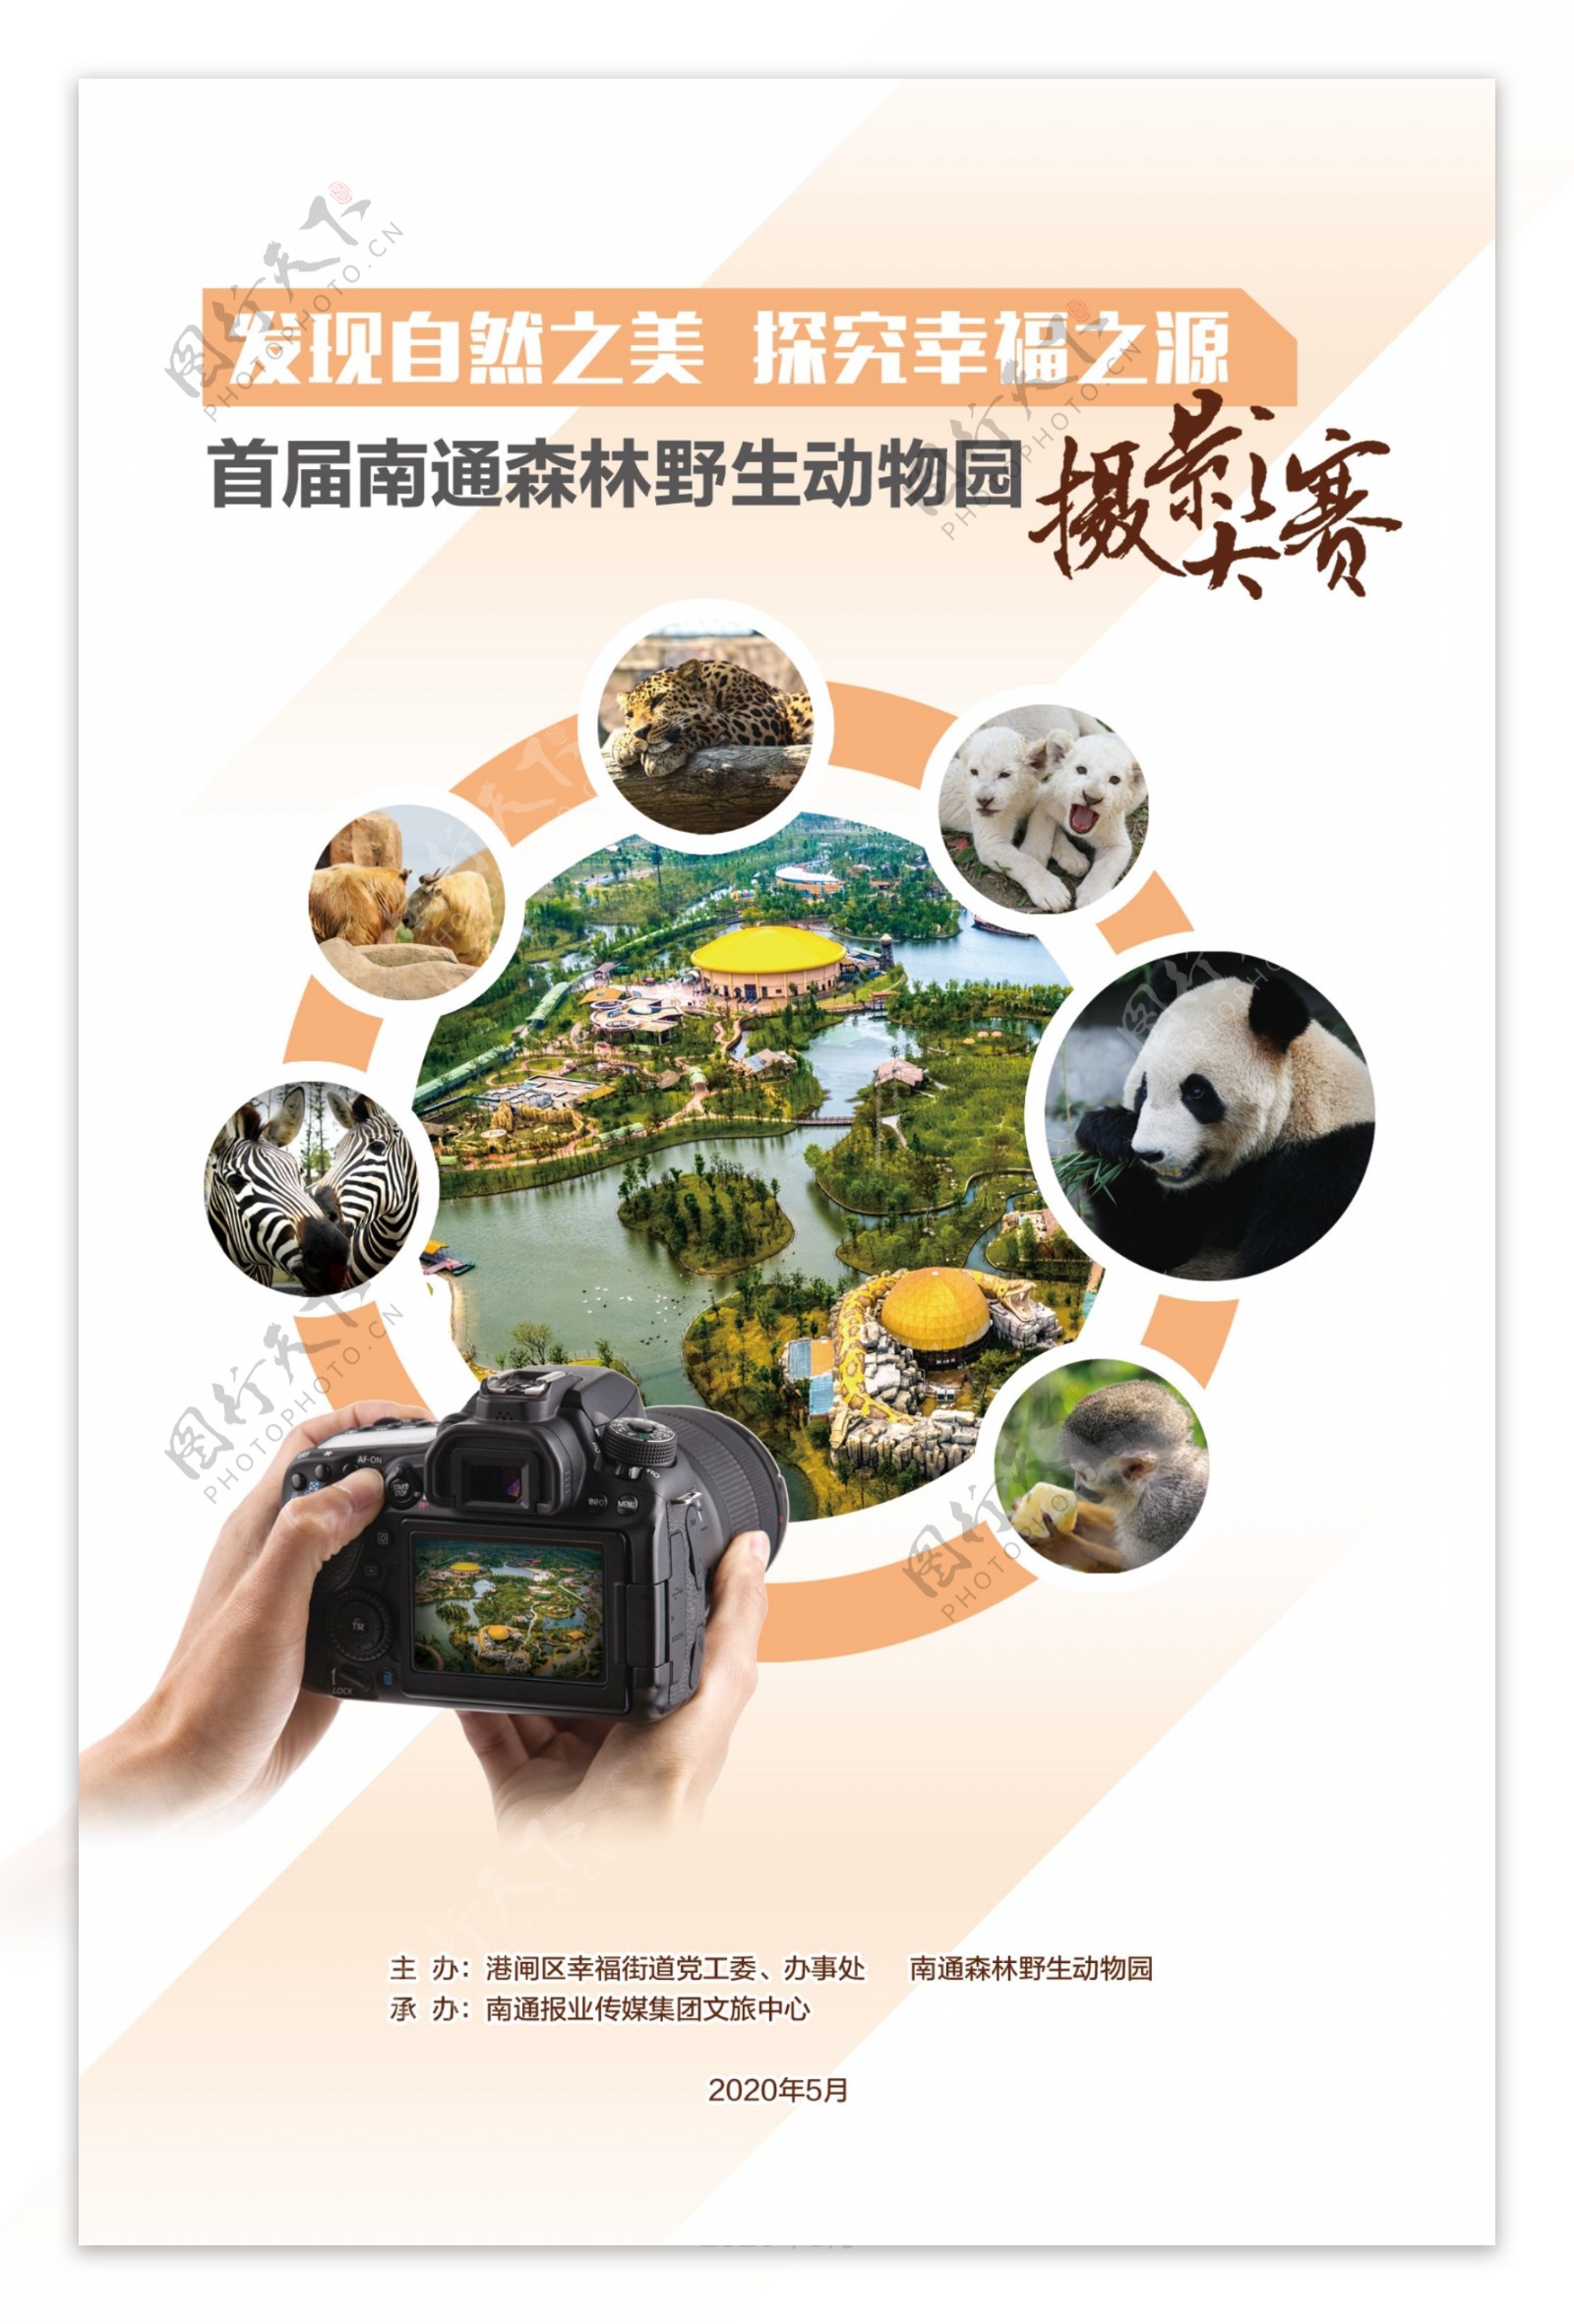 南通野生动物园摄影大赛手册